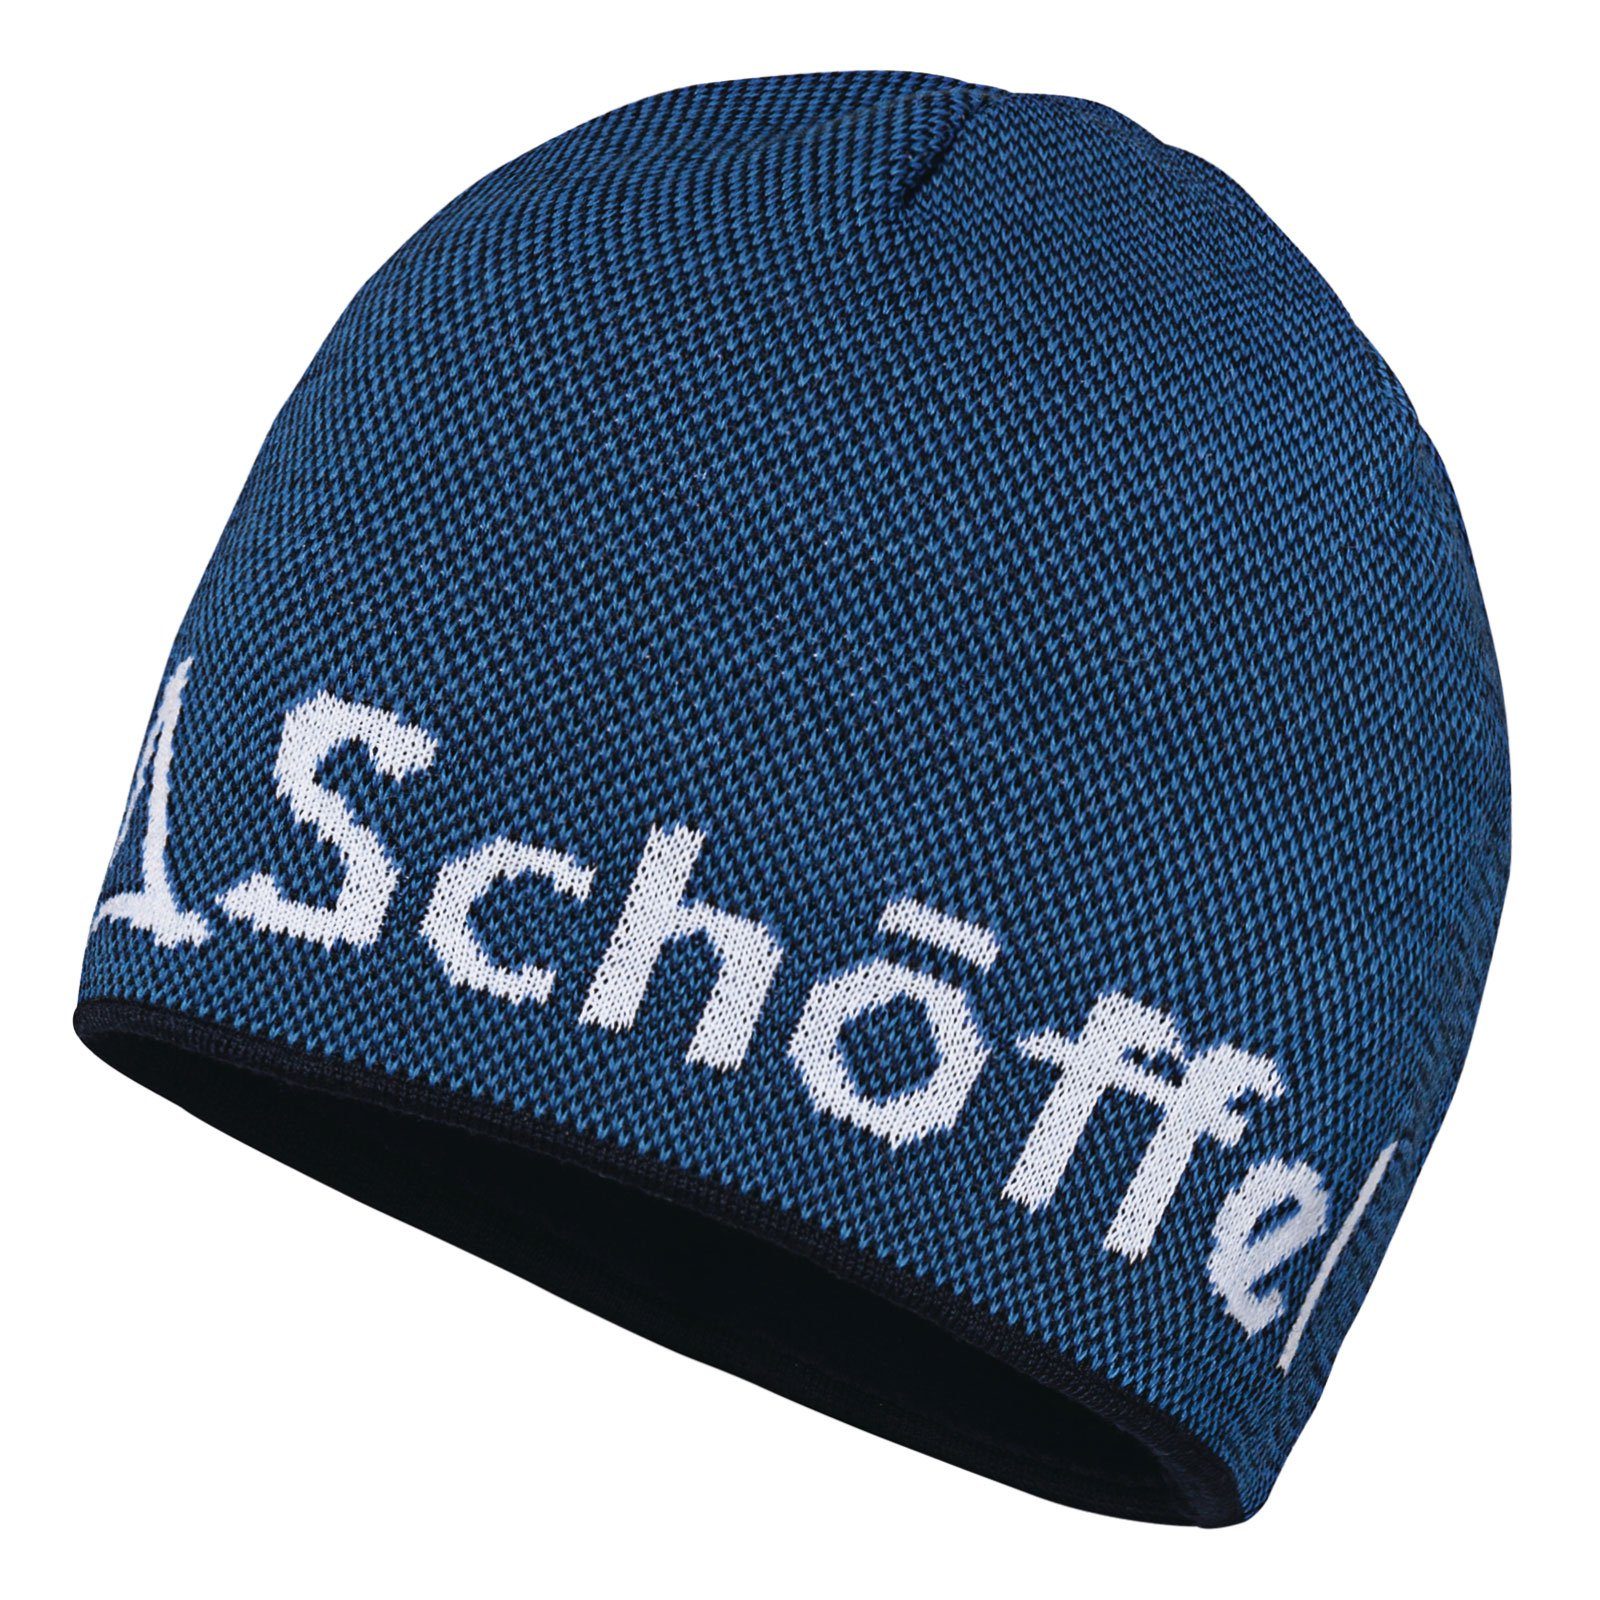 Schoeffel Schöffel Strickmütze Klinovec Hat 8320 Knitted Schöffel-Logo blue eingestricktem directoire mit